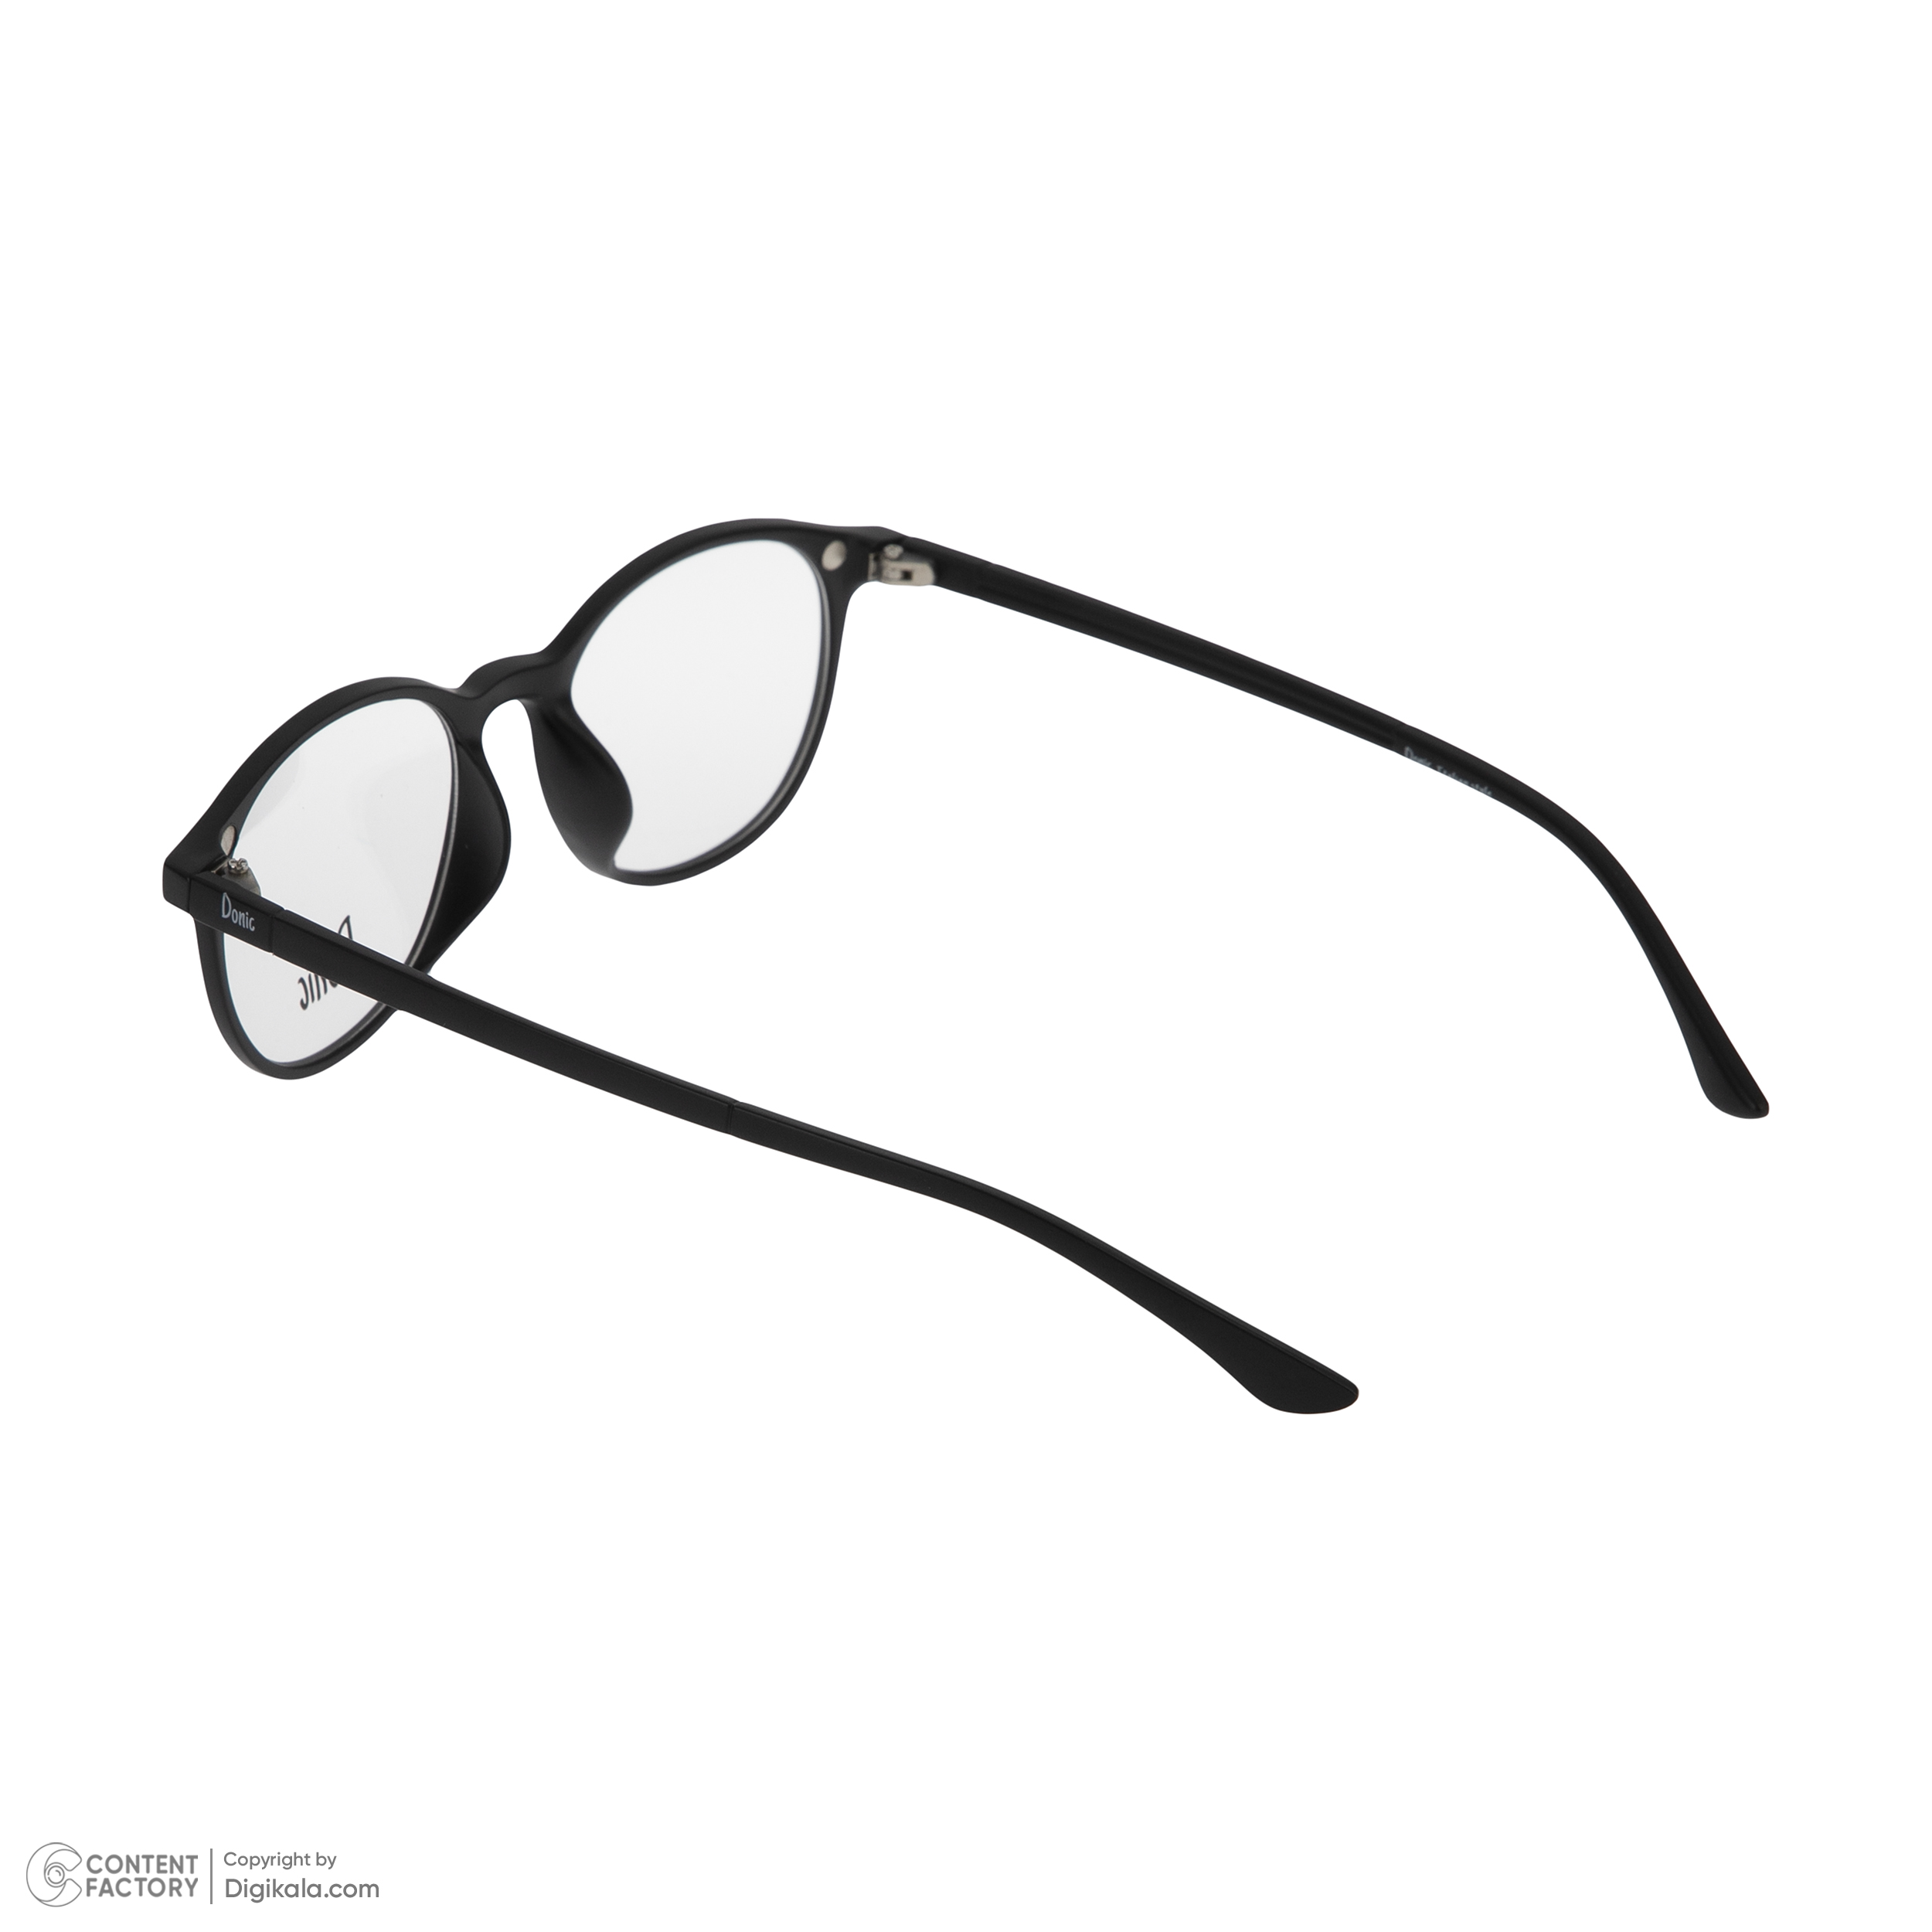 فریم عینک طبی دونیک مدل tr2245-c2 به همراه کاور آفتابی -  - 4